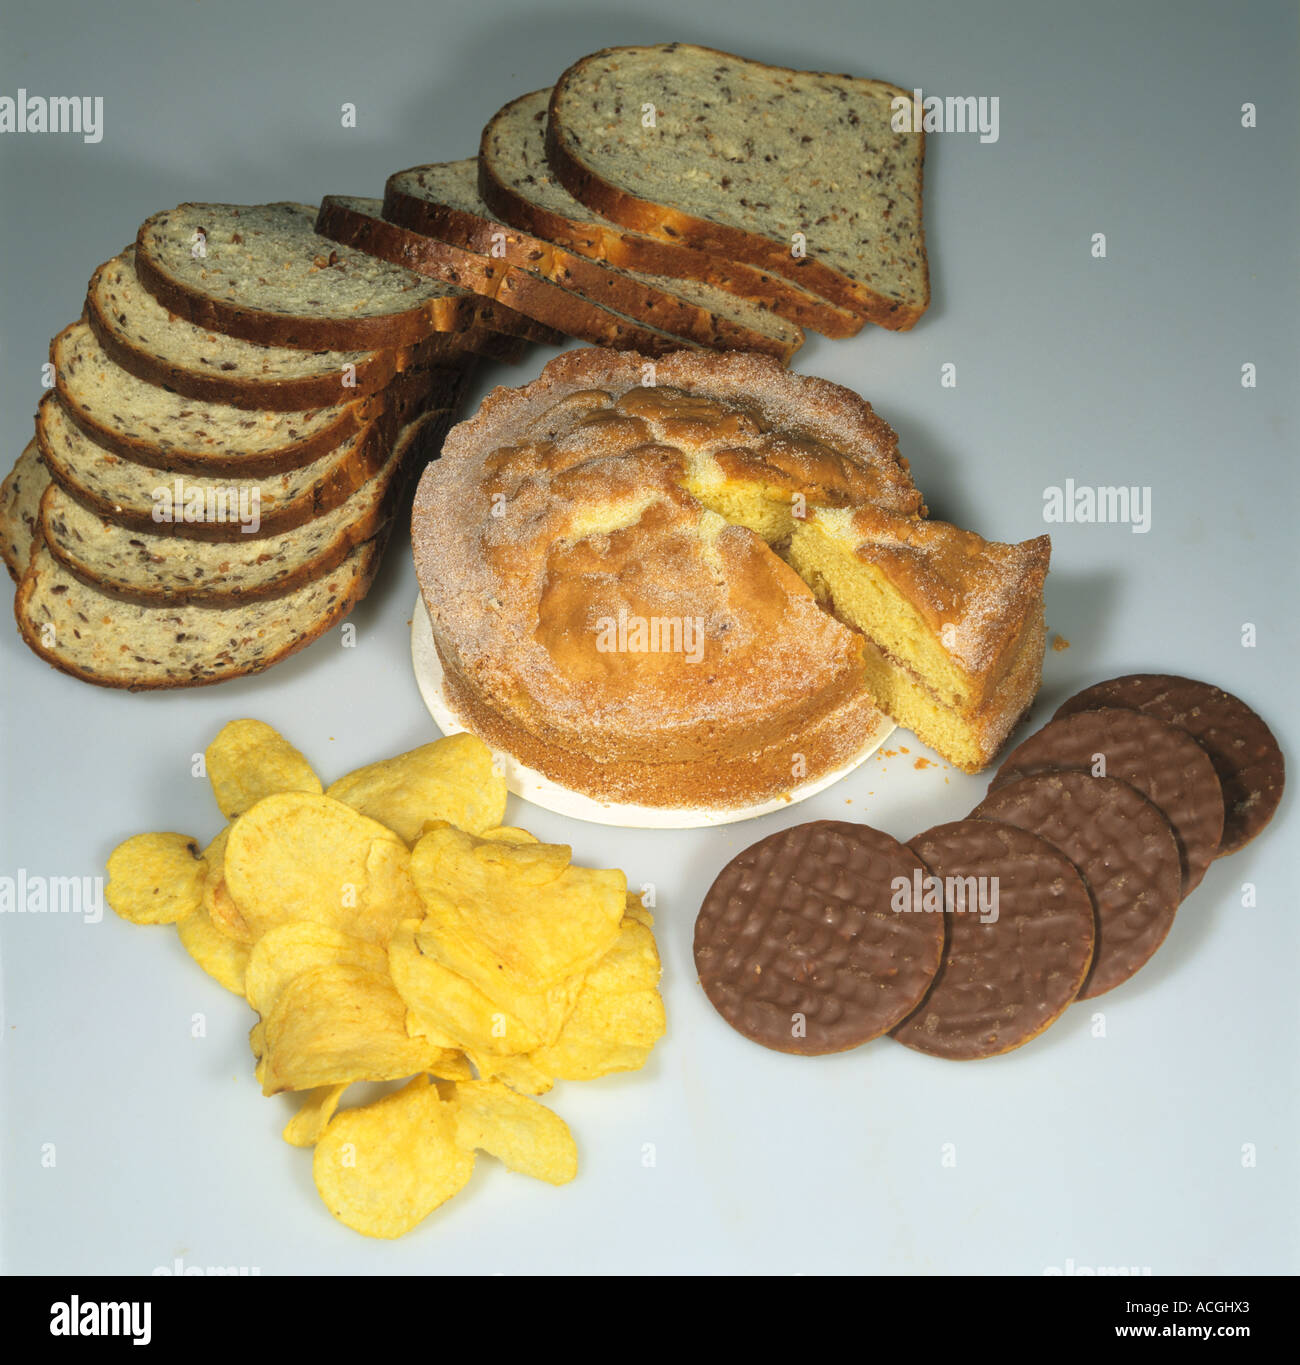 Beispiele für hochenergetische kohlenhydratreiche Lebensmittel Kuchen Chips Kekse Schokolade Brot Stockfoto